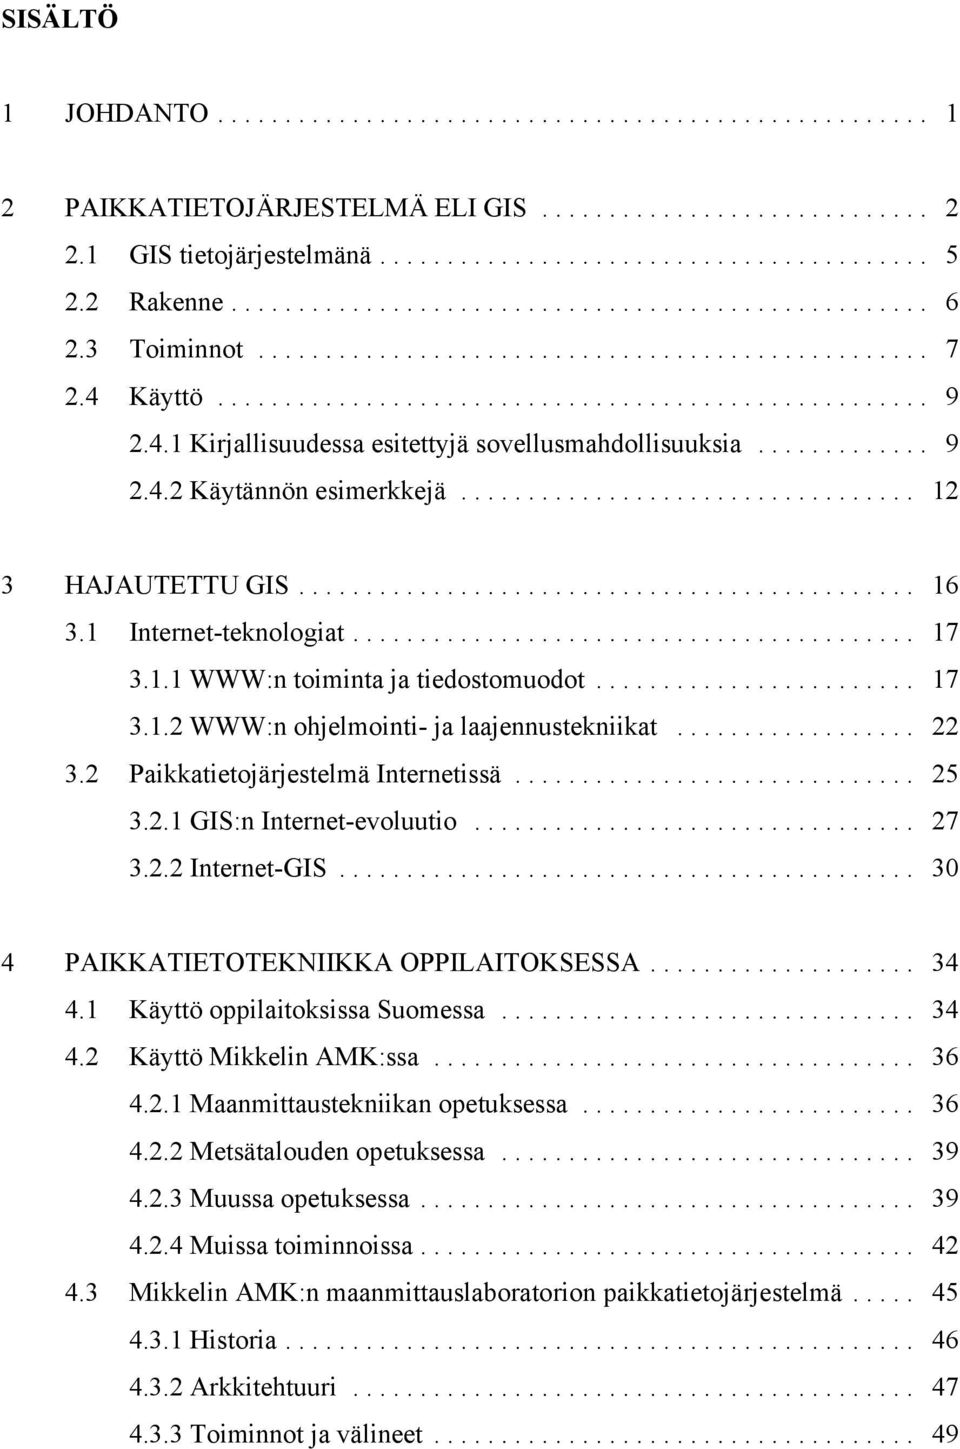 2 Paikkatietojärjestelmä Internetissä... 25 3.2.1 GIS:n Internet-evoluutio... 27 3.2.2 Internet-GIS... 30 4 PAIKKATIETOTEKNIIKKA OPPILAITOKSESSA... 34 4.1 Käyttö oppilaitoksissa Suomessa... 34 4.2 Käyttö Mikkelin AMK:ssa.